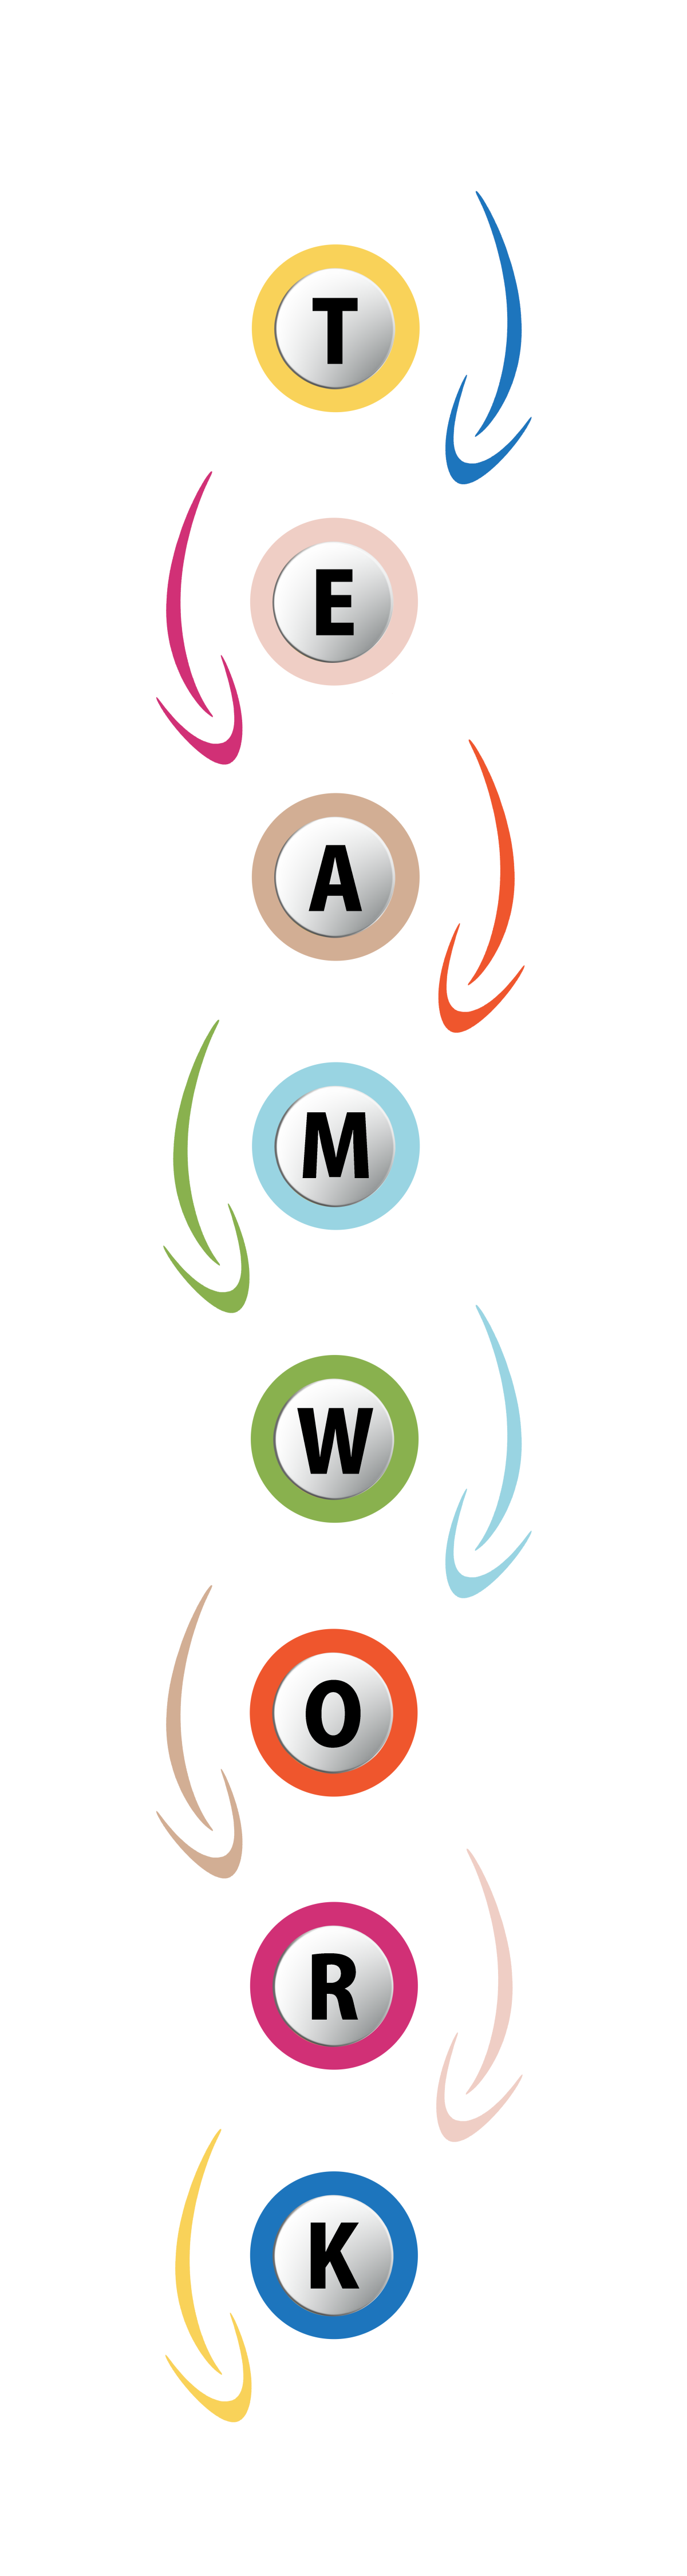 Das Wort Teamwork aus untereinander angeordneten Buchstaben in bunten Kreisen, verbunden mit bunten Pfeilen, abwechselnd links und rechts, von Kreis zu Kreis